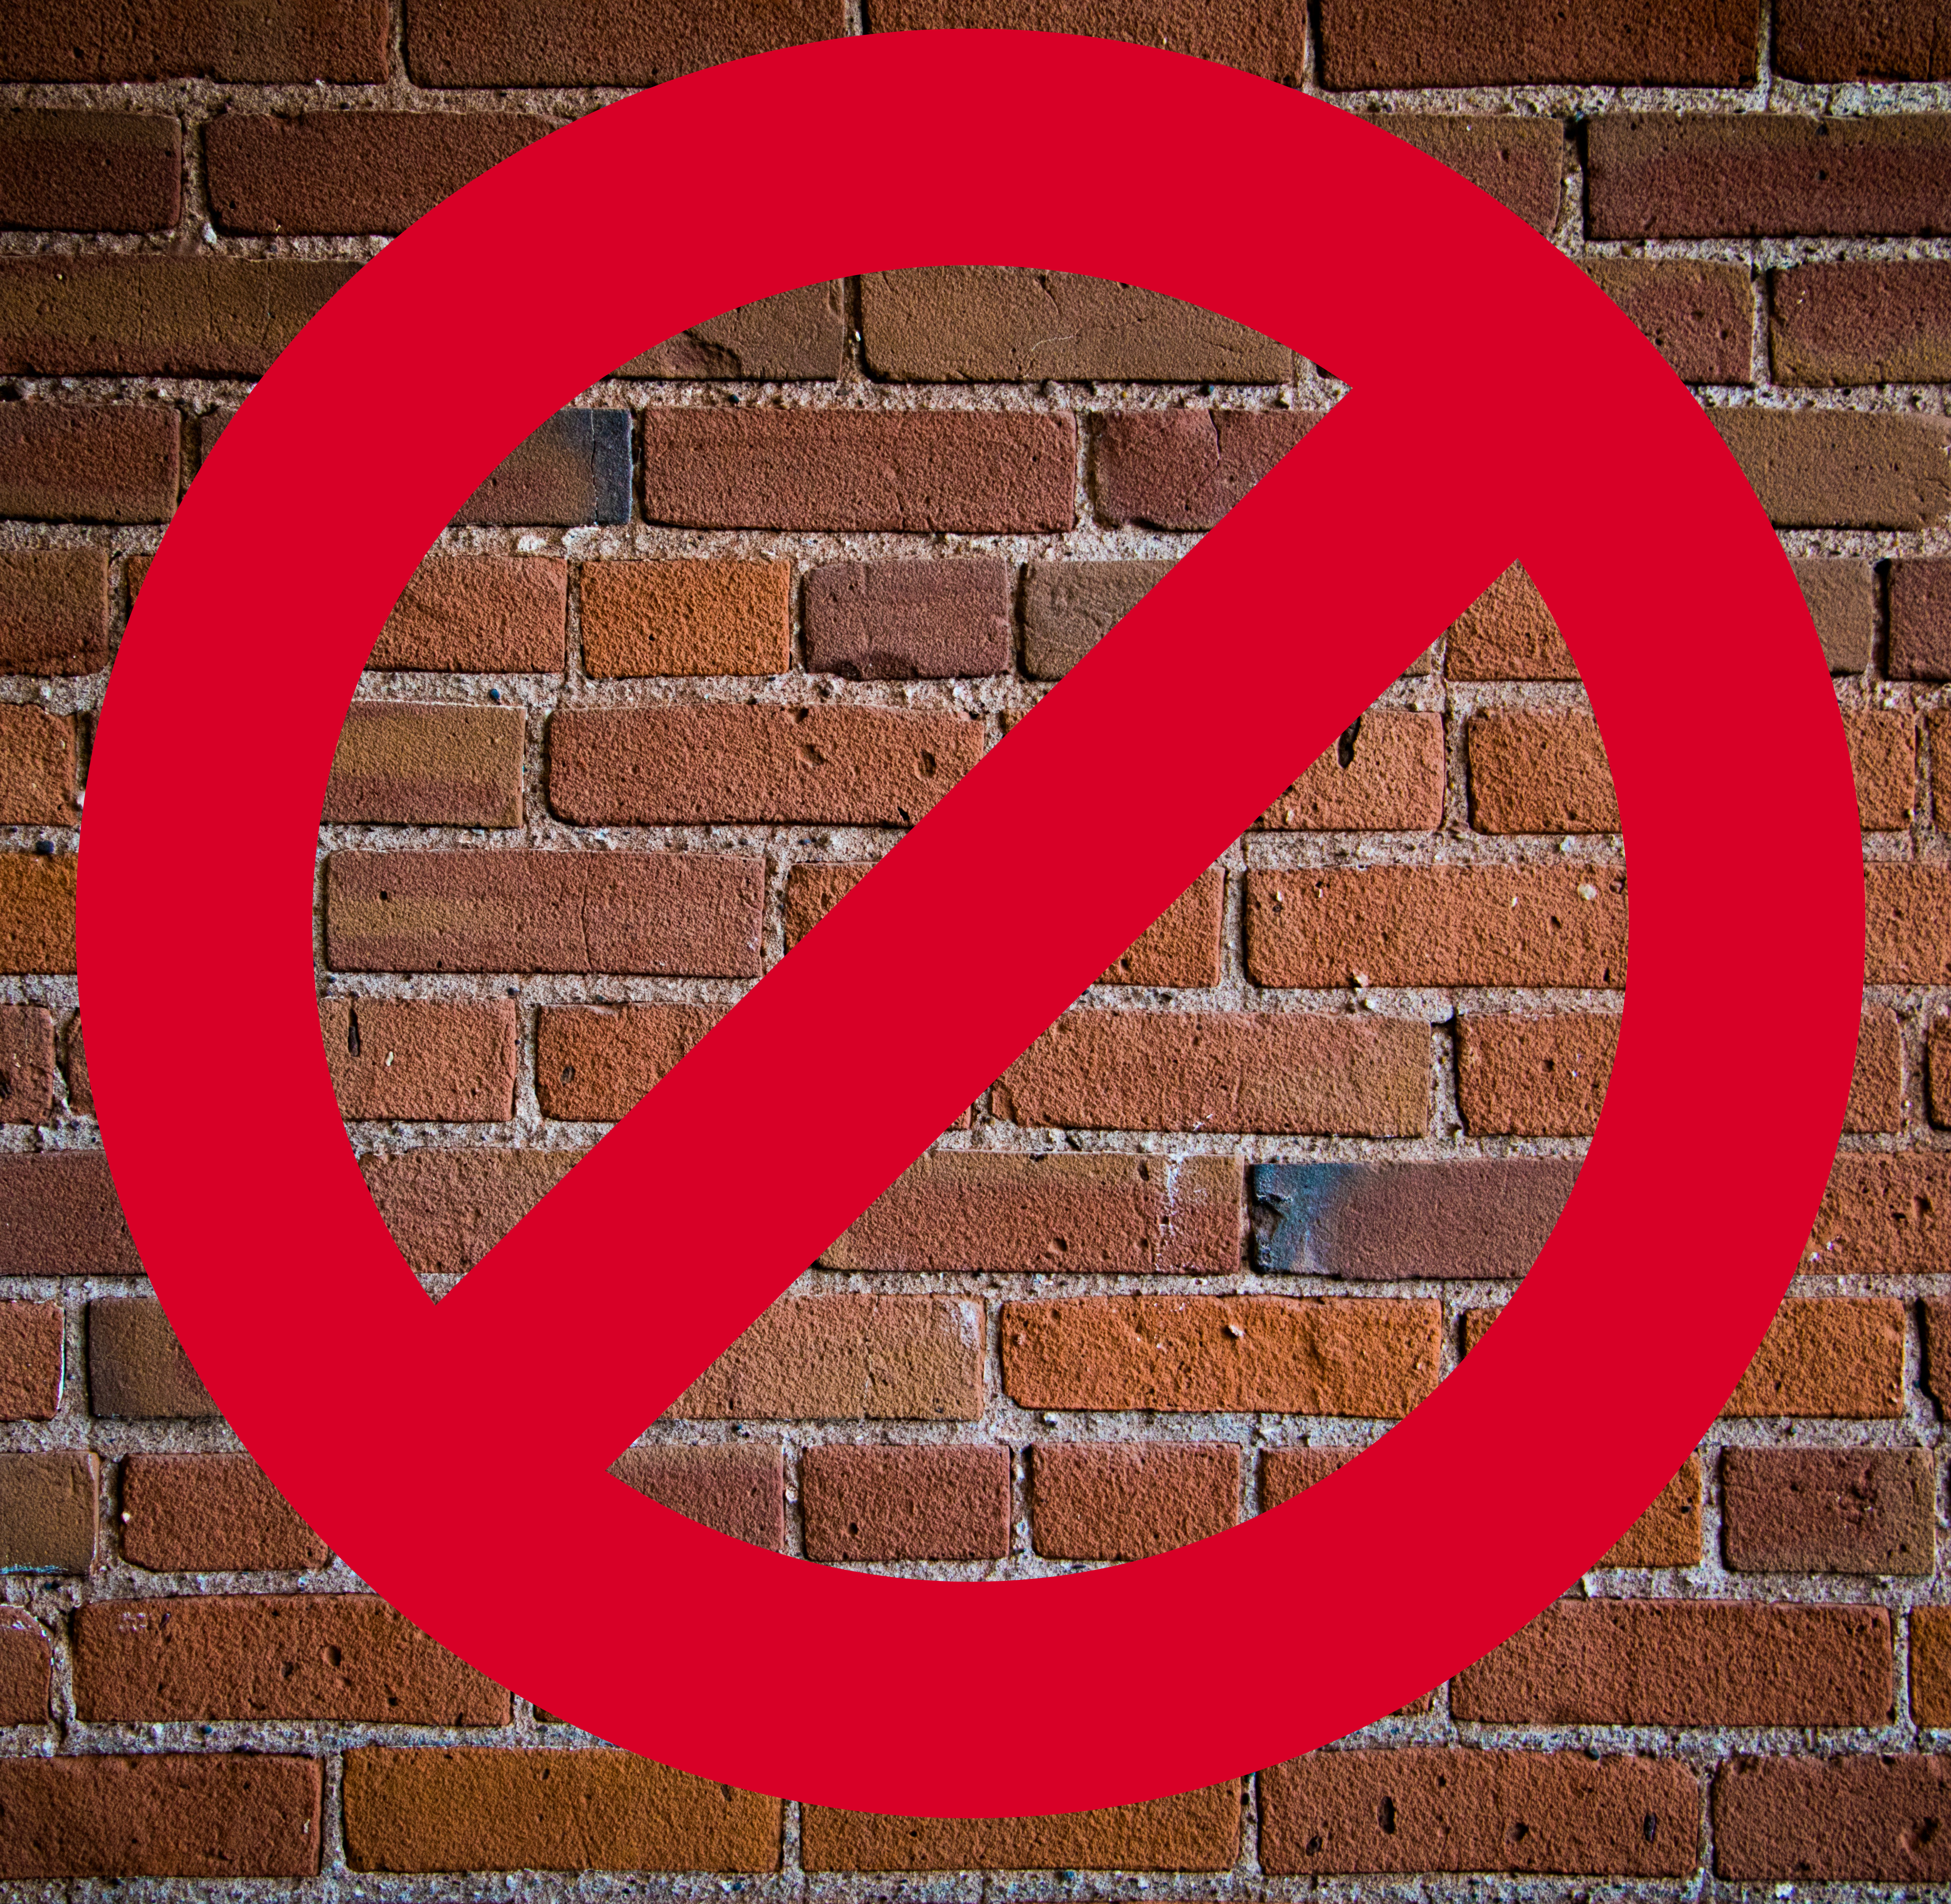 Say no to a brick wall